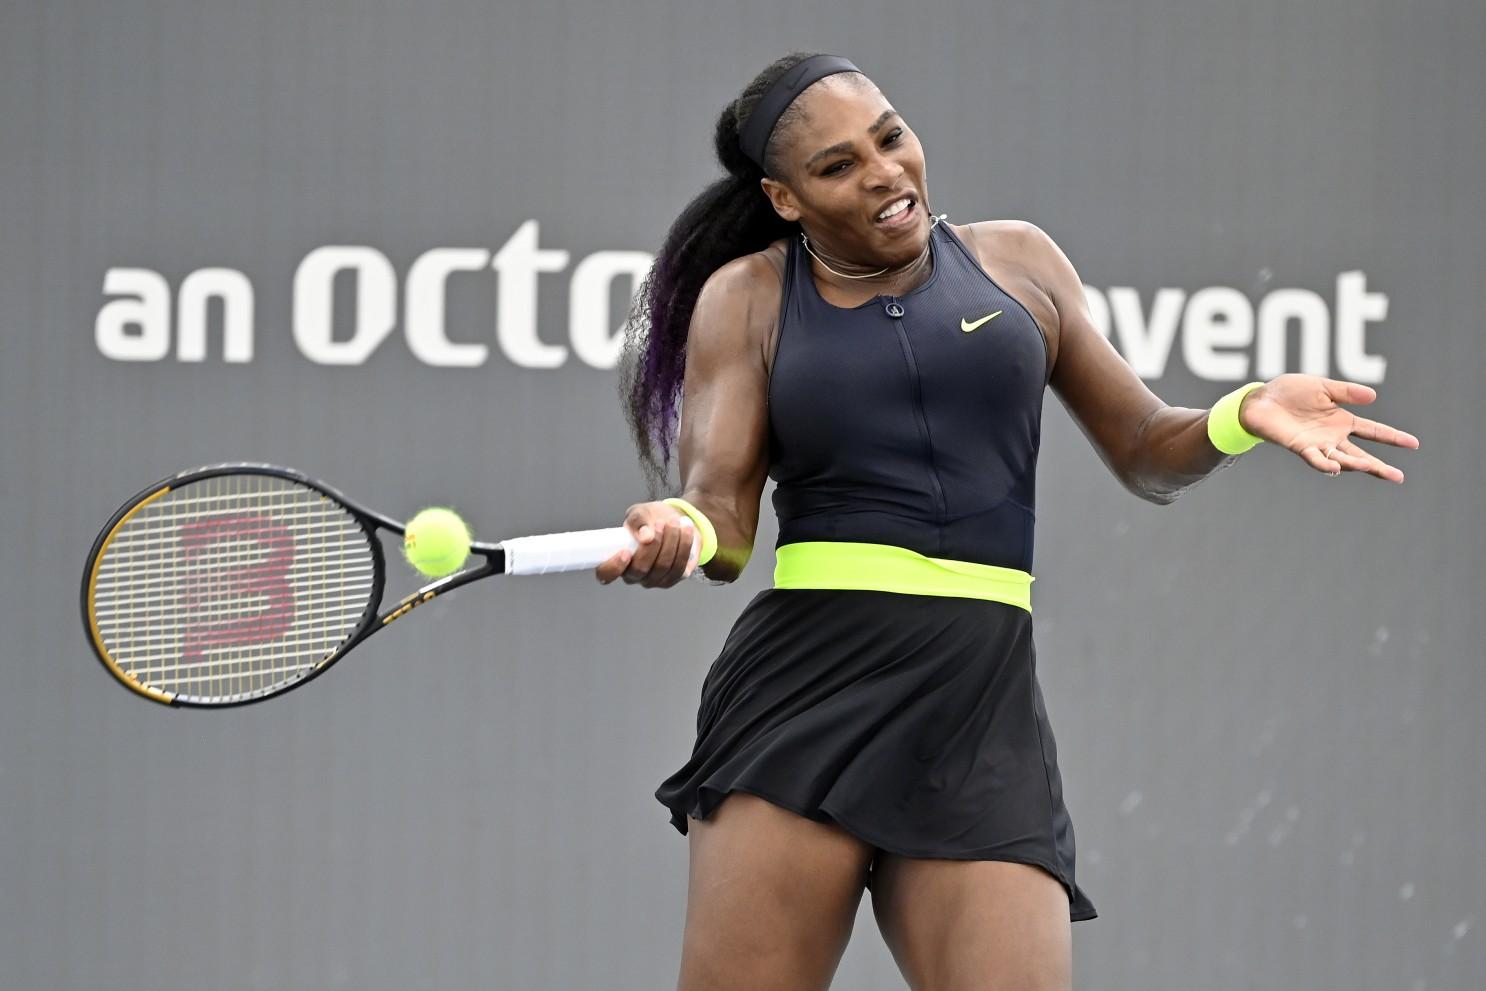 Serena opet slavila i došla samo jedan meč do historije